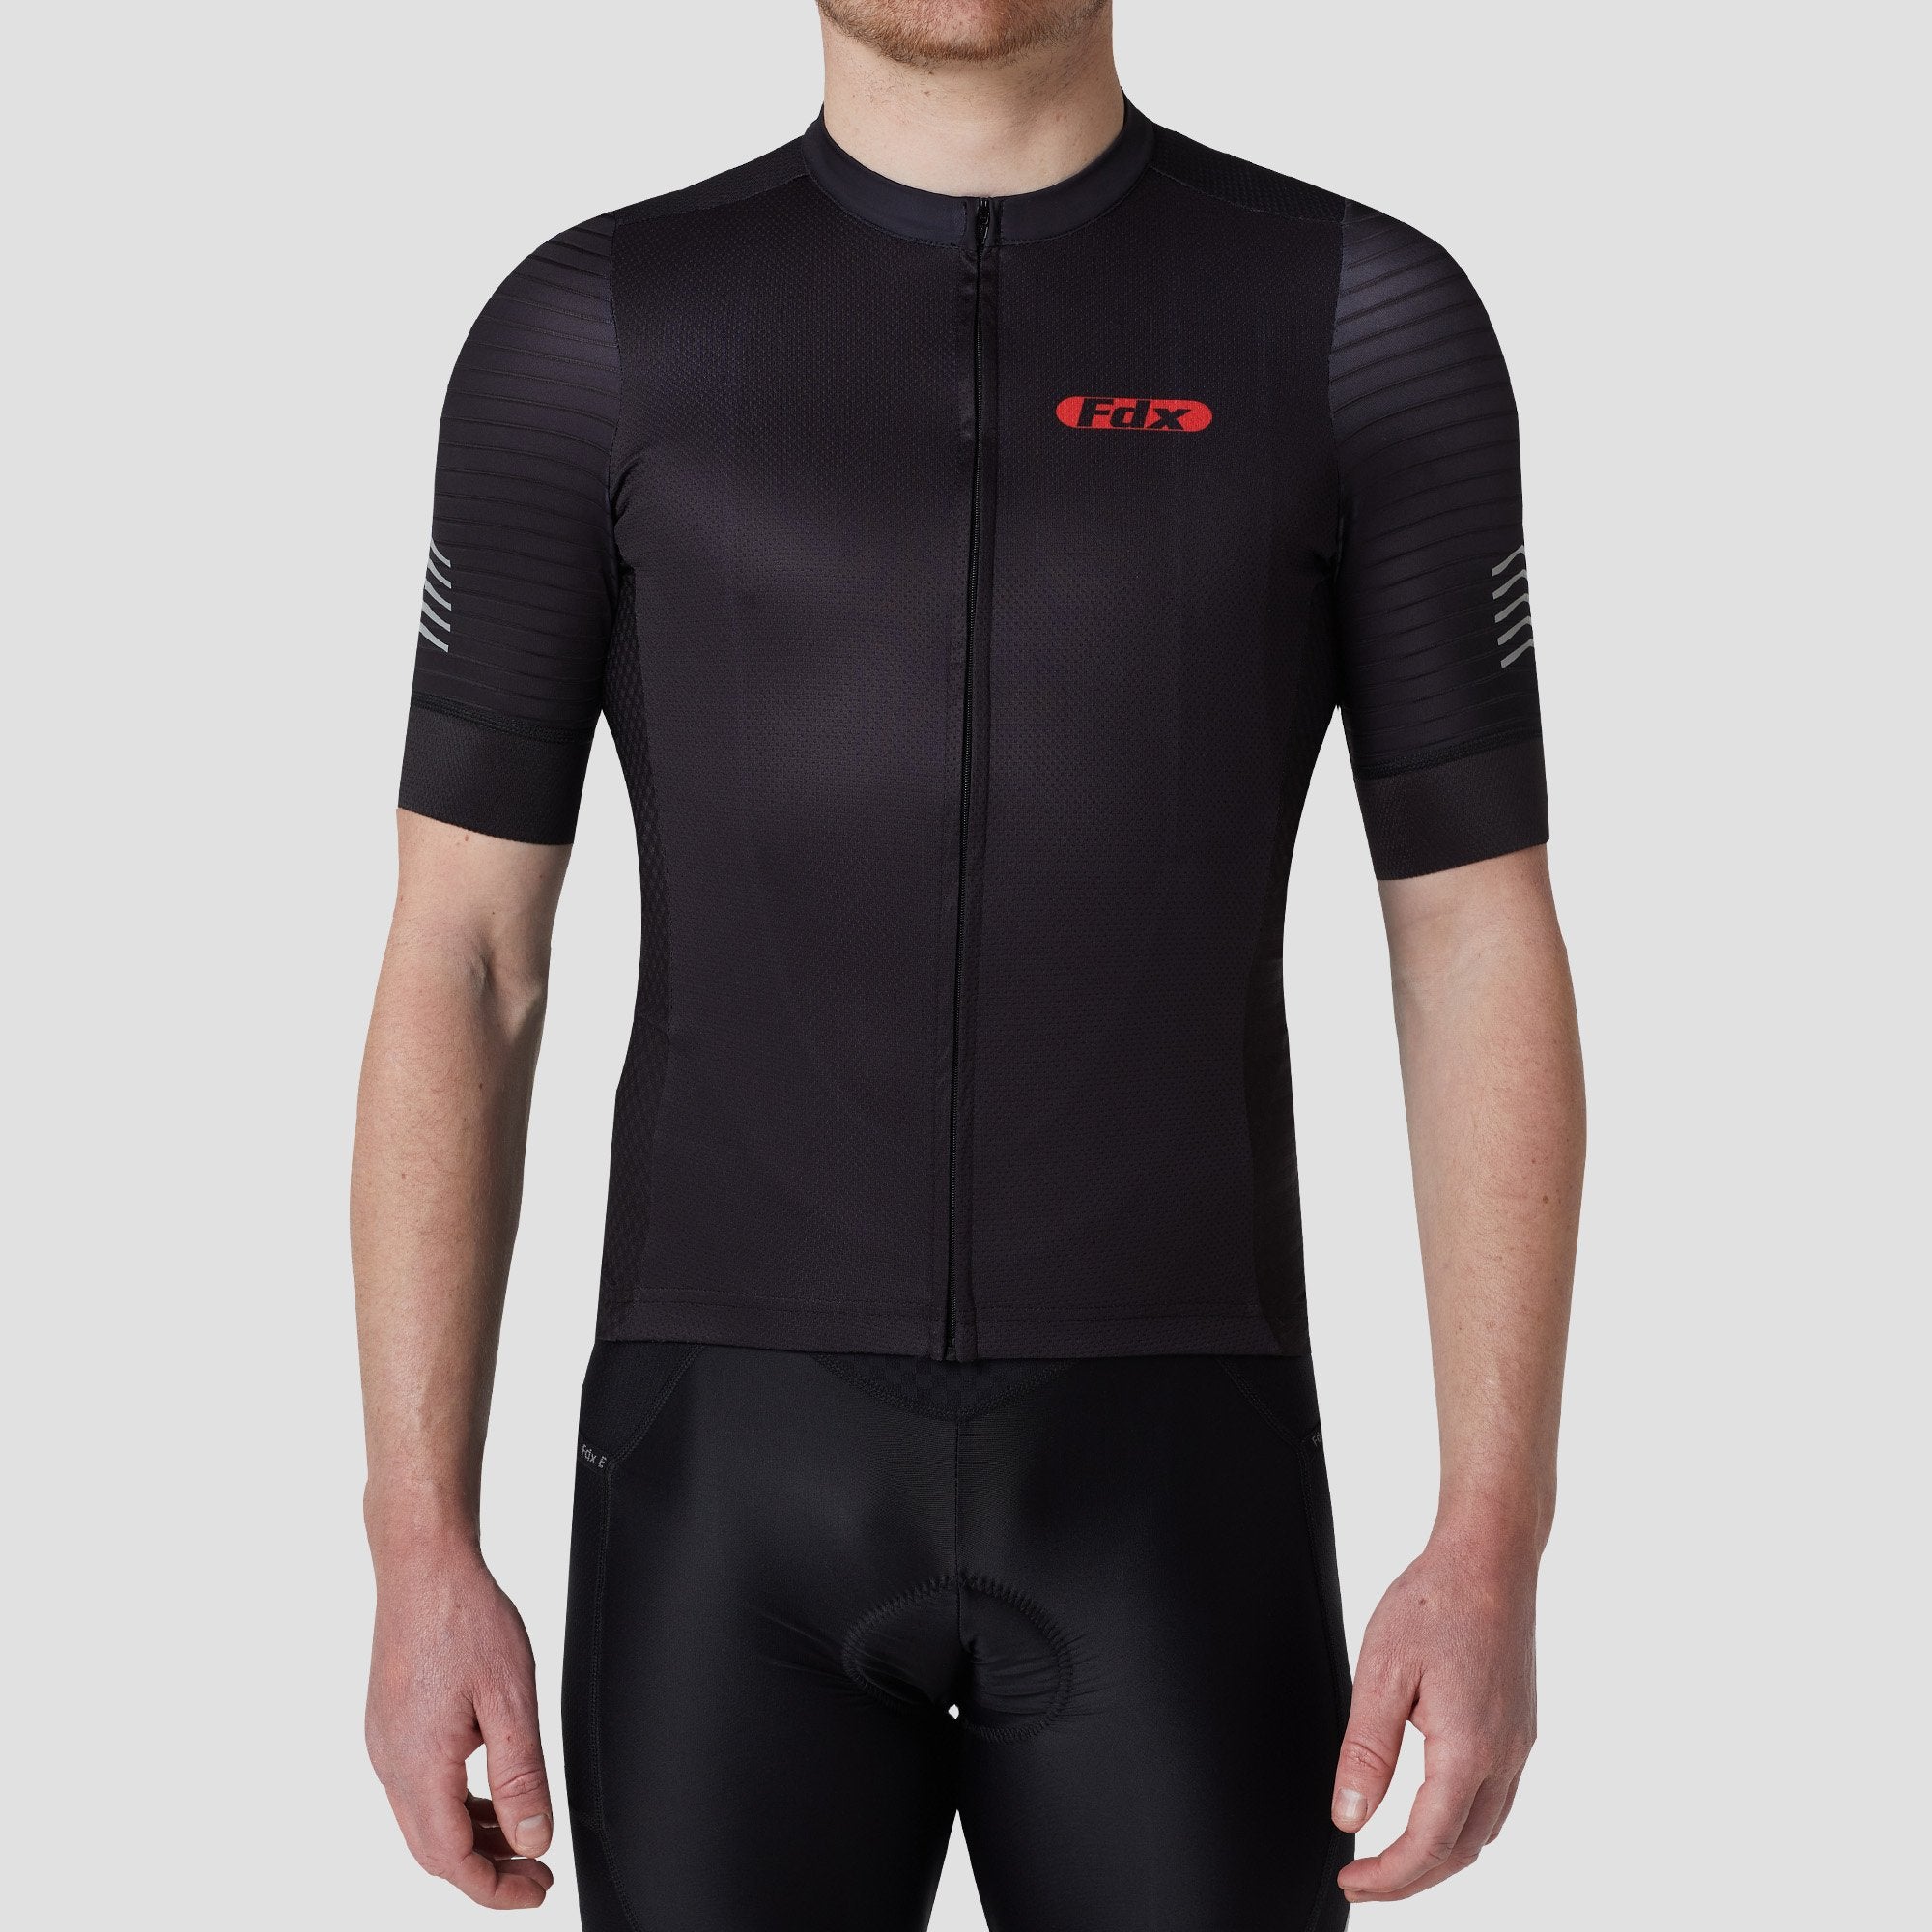 Fdx Mens Black Short Sleeve Cycling Jersey for Summer Best Road Bike Wear Top Light Weight, Full Zipper, Pockets & Hi-viz Reflectors - Essential